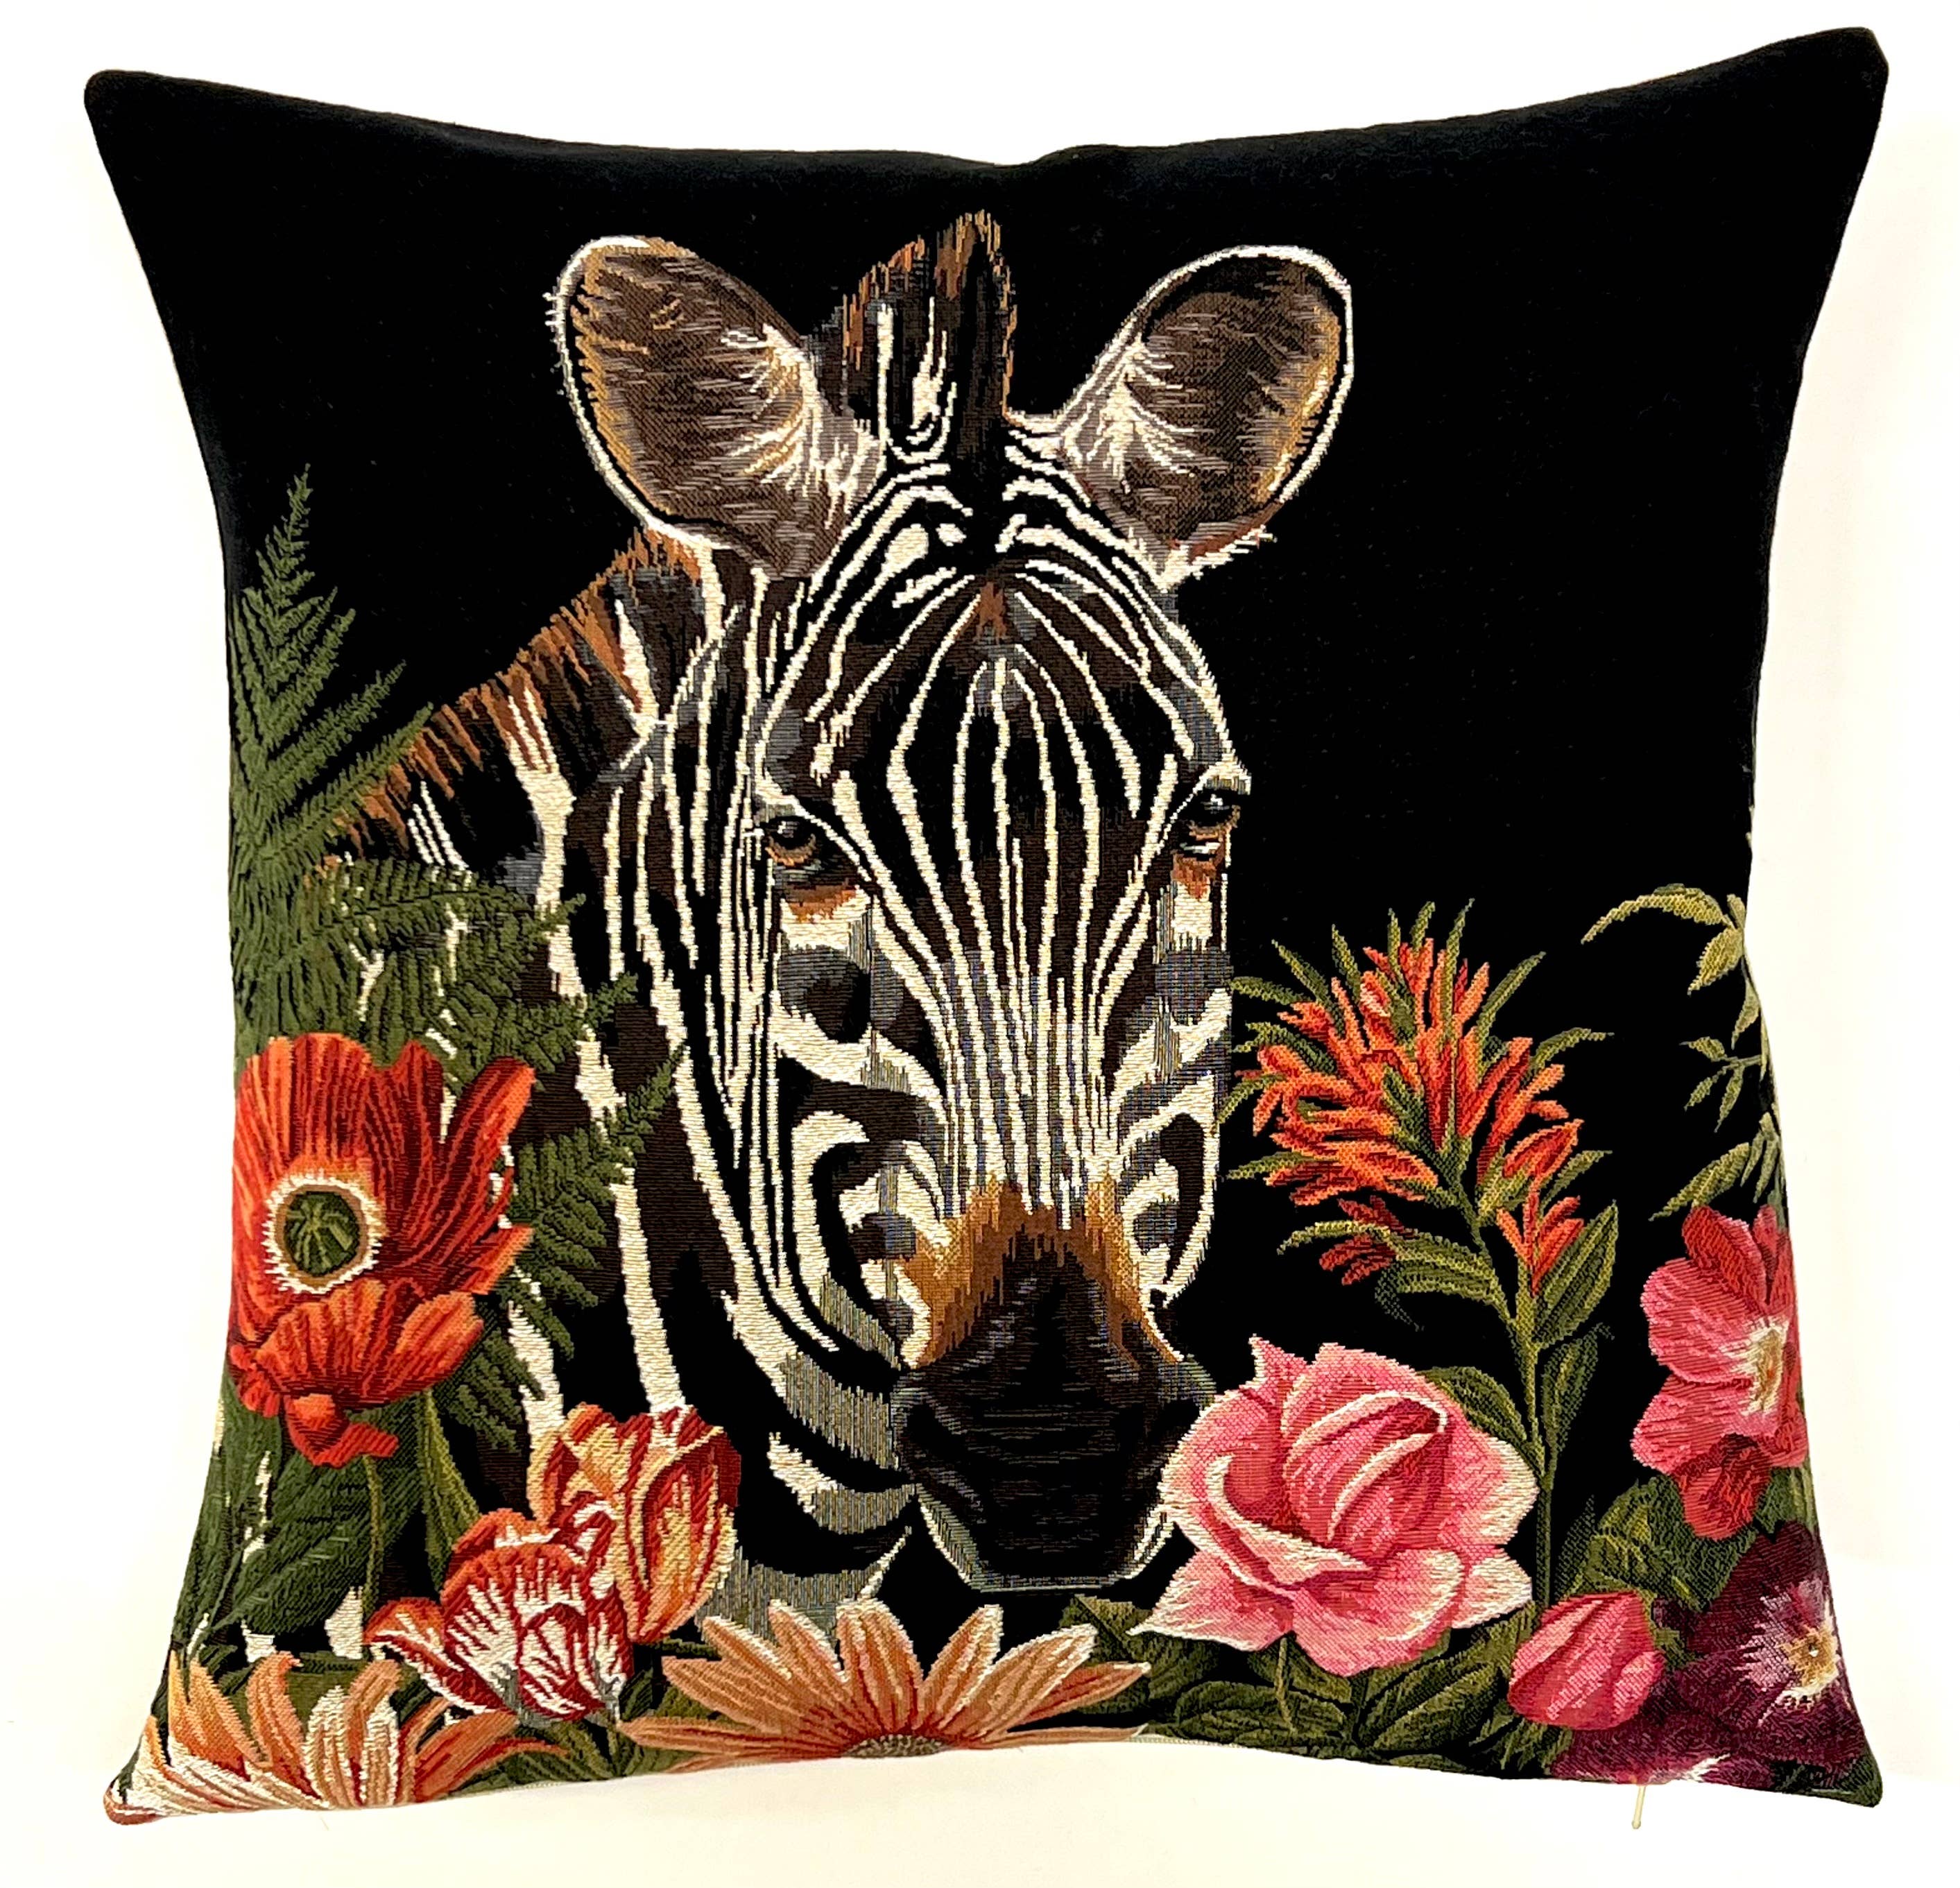 Zebra Pillow Cover - Safari Decor - Colonial Gift